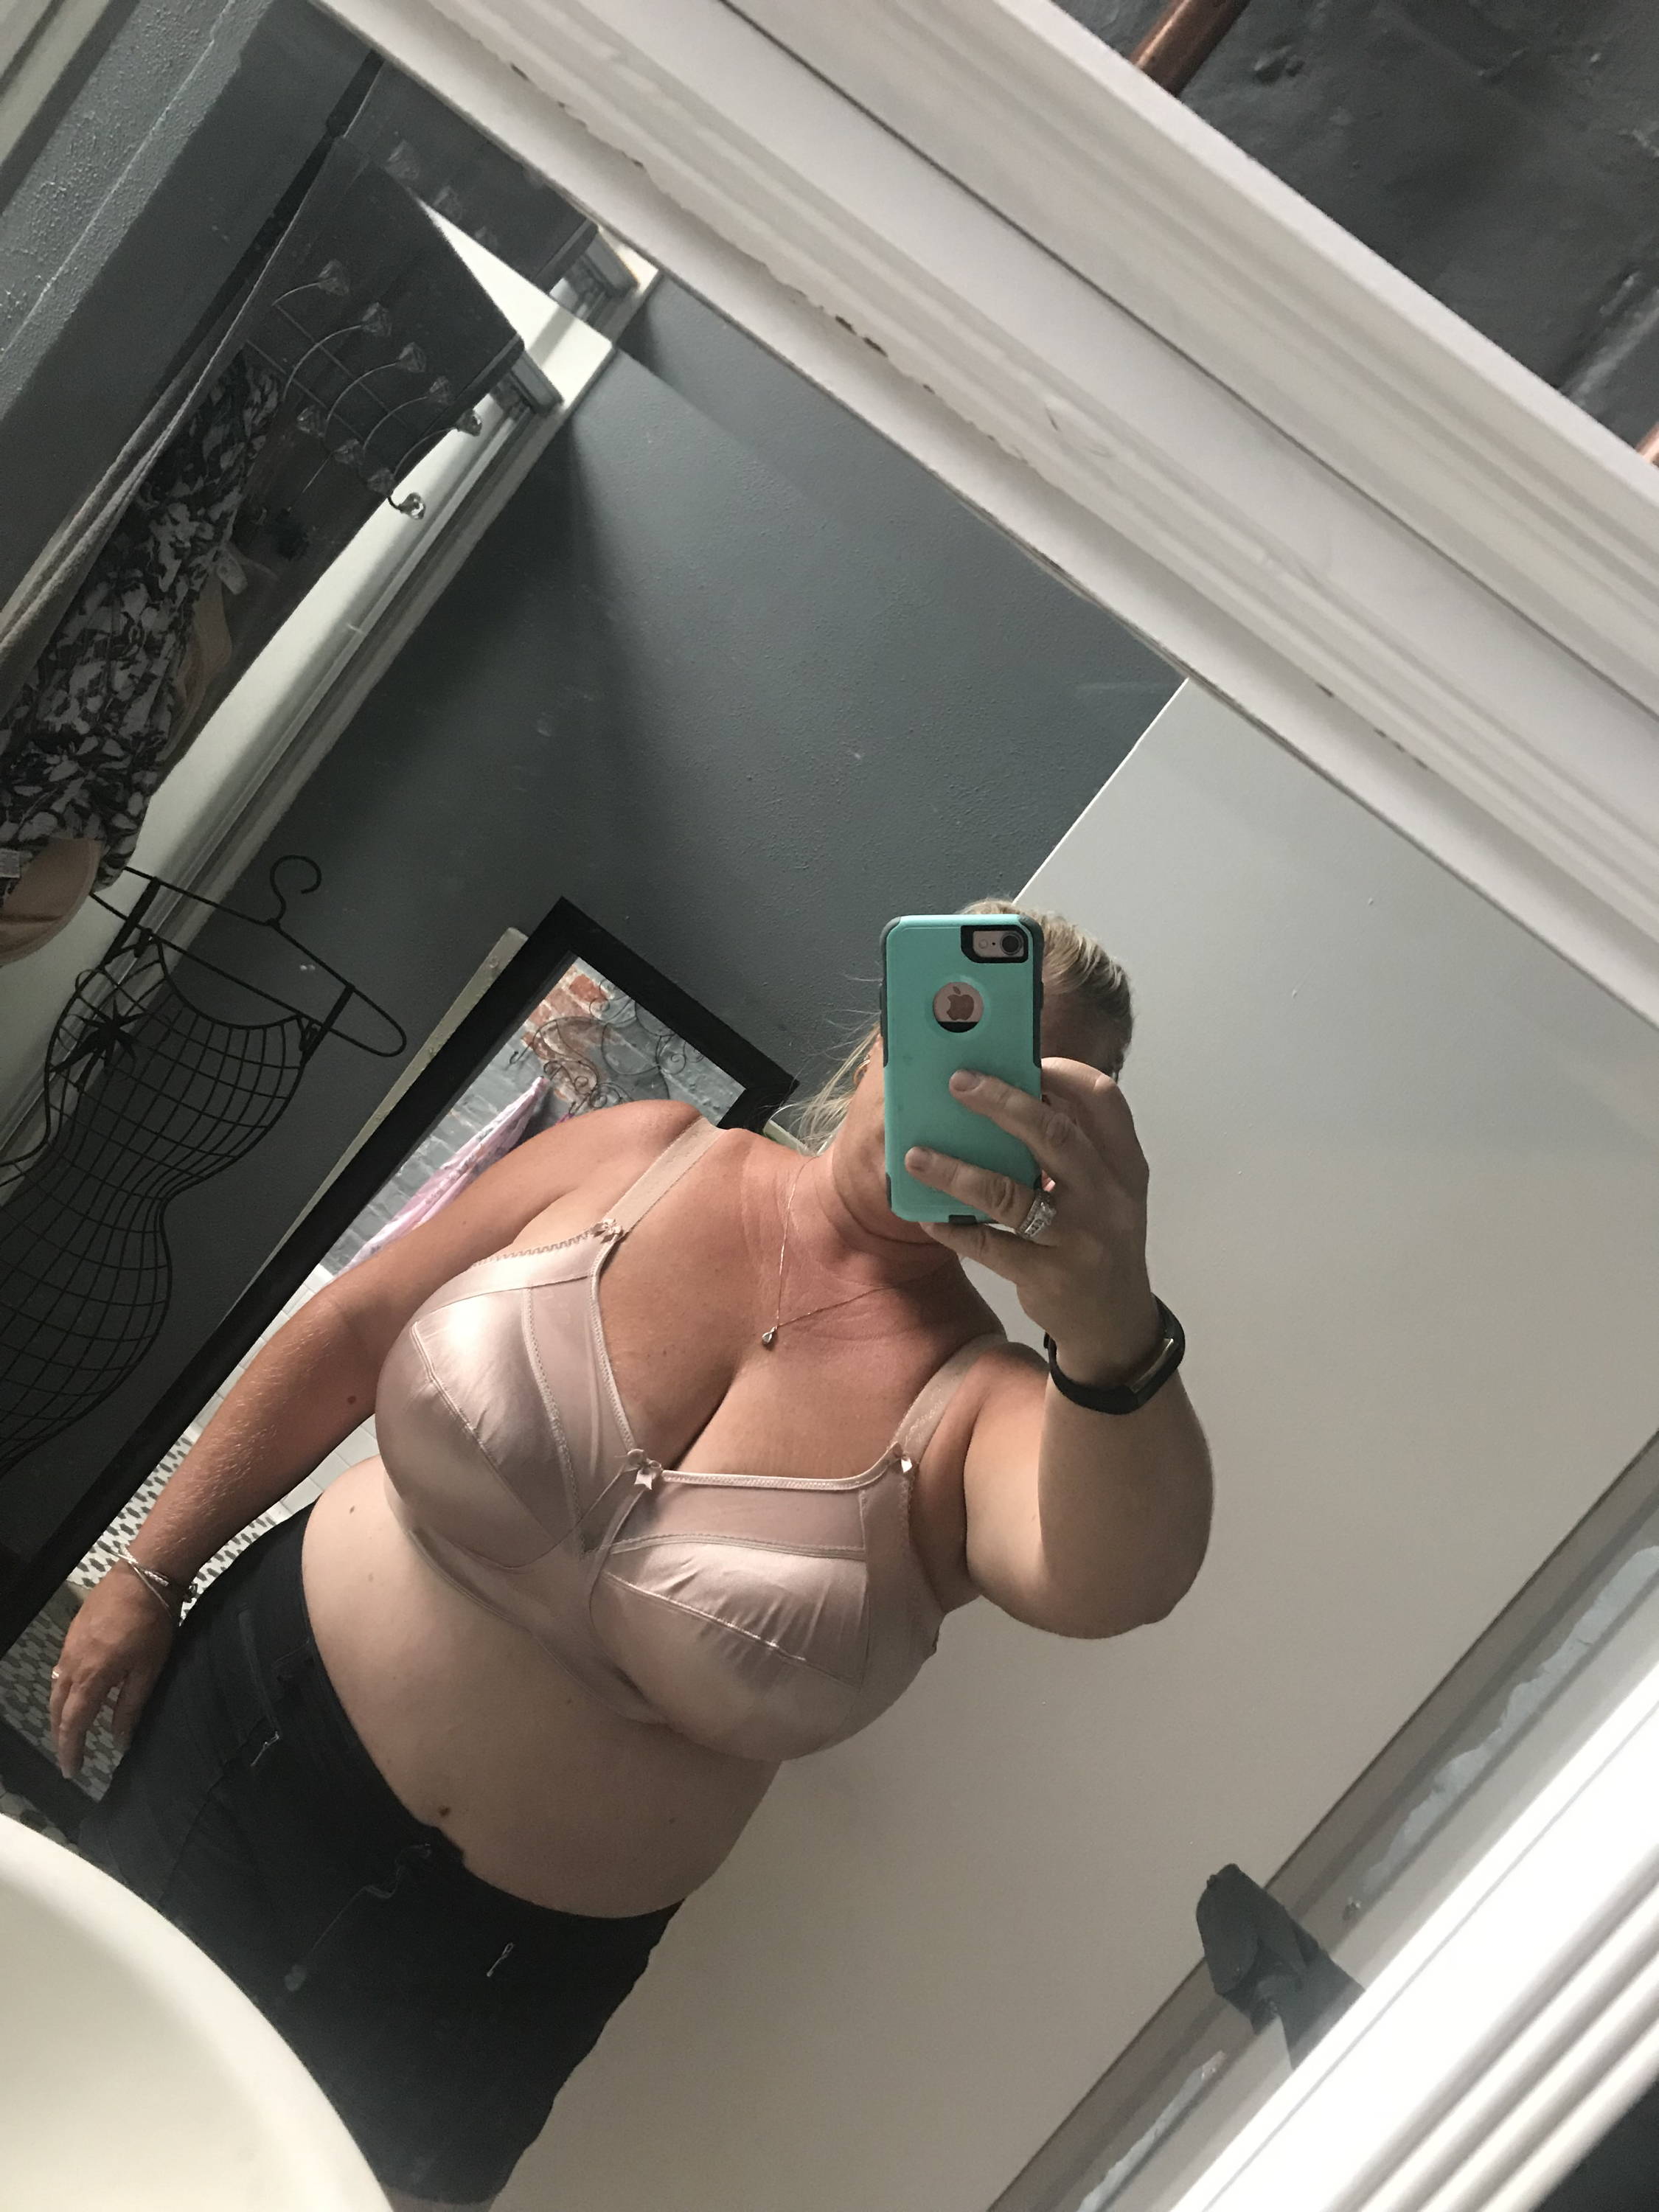 soft boobs cleavage selfie